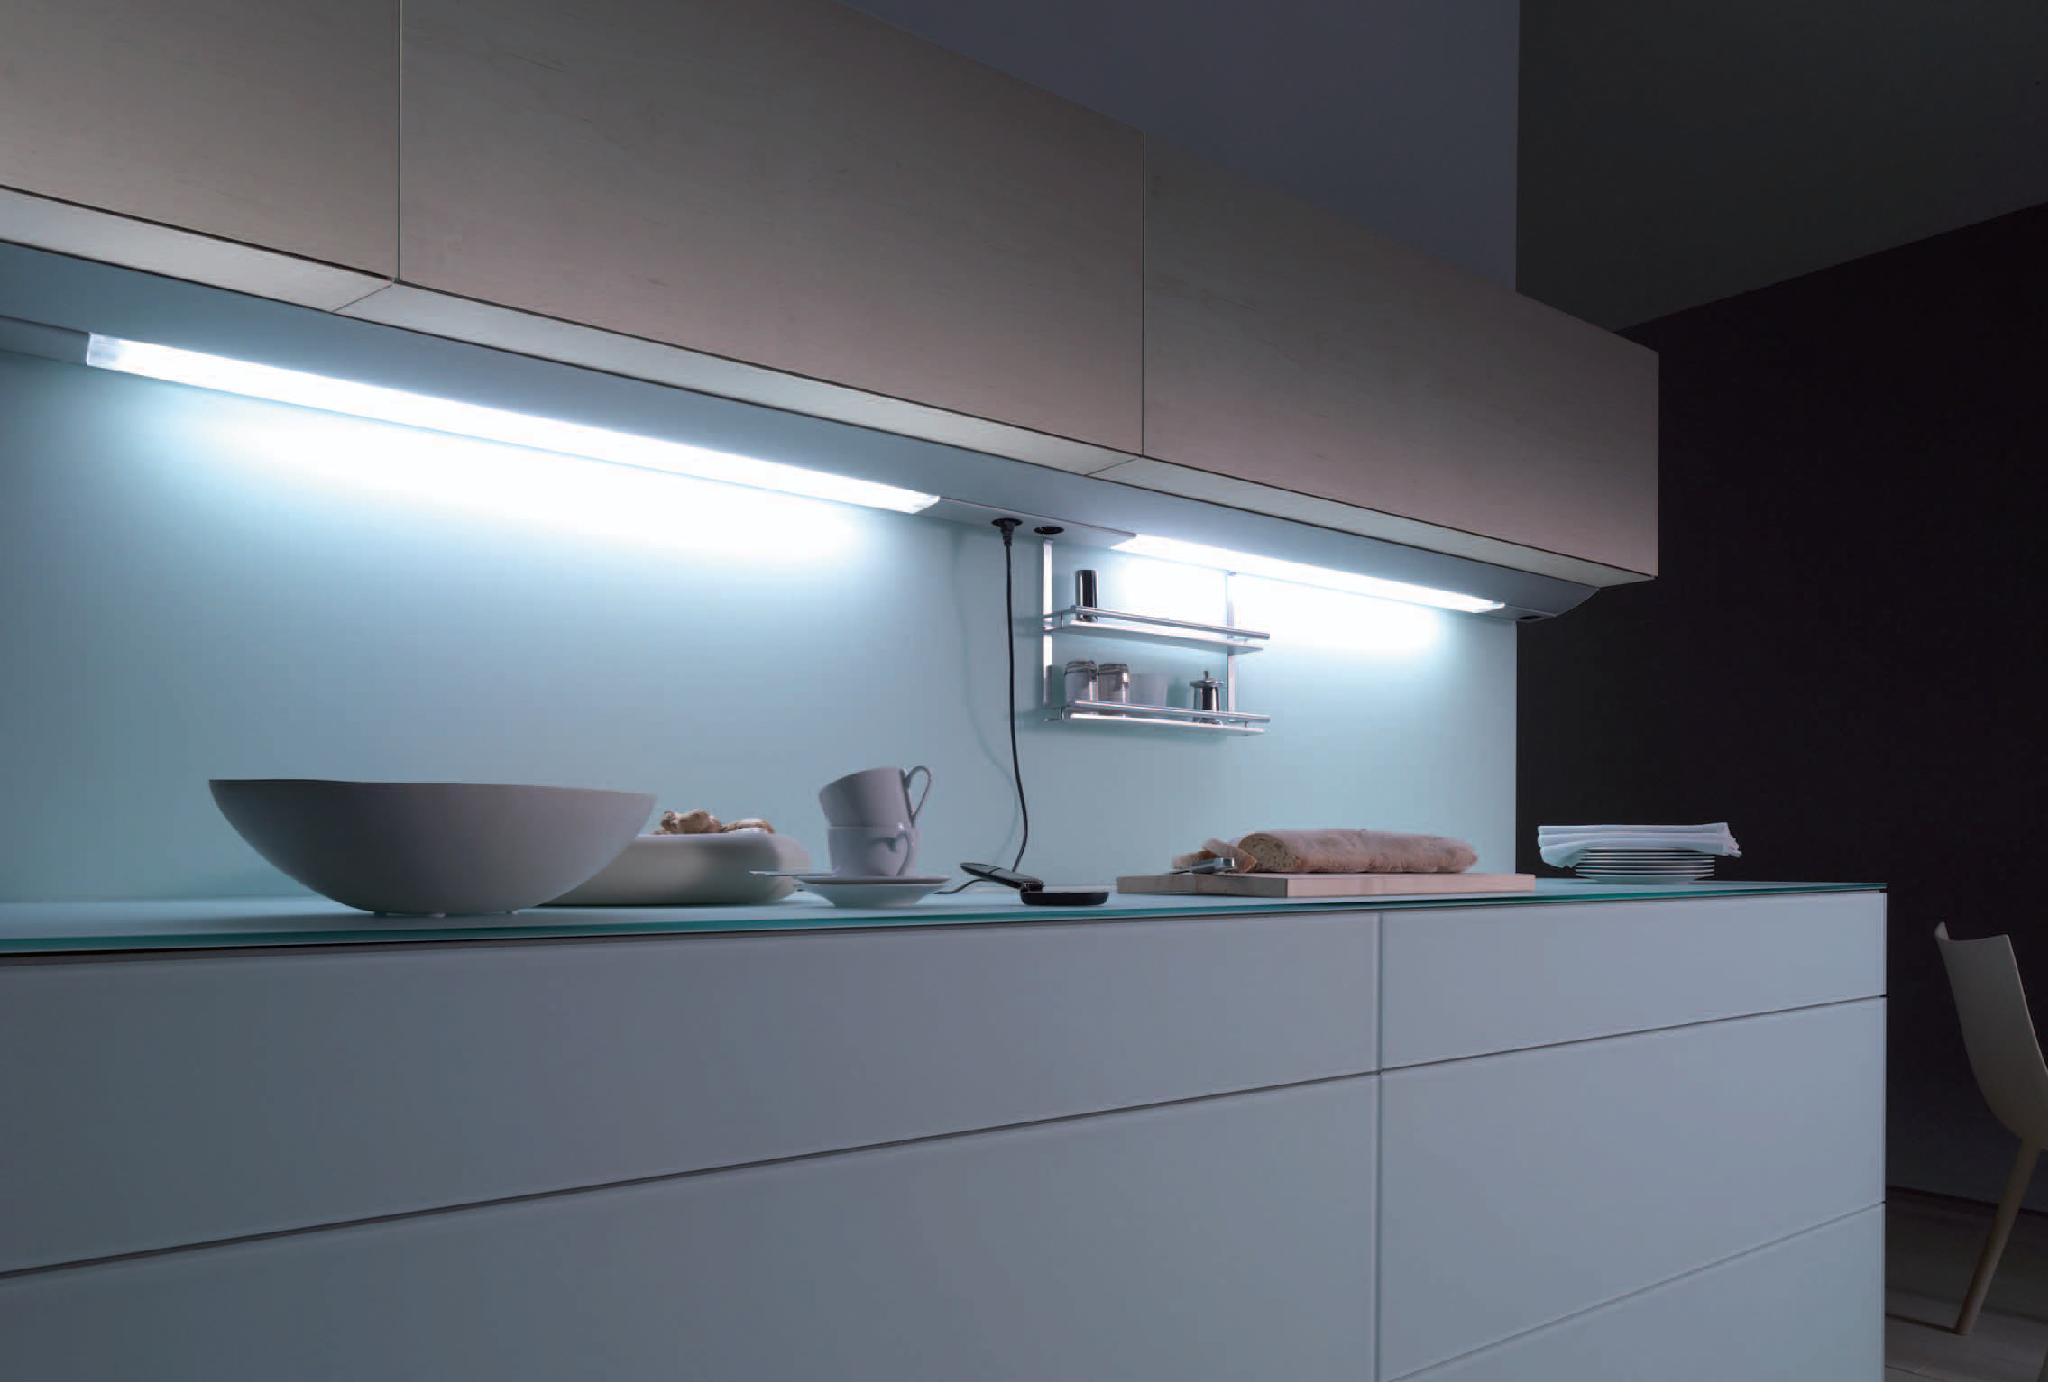 Подсветка кухни какая лучше. Линейный светильник Obi Kitchen led-144. Подсветка столешницы ikea для кухни под шкафы светодиодная. Светильник для подсветки кухни под шкафом поворотный Luka 79154/08/36. Линейный светильник Obi Kitchen led-54.